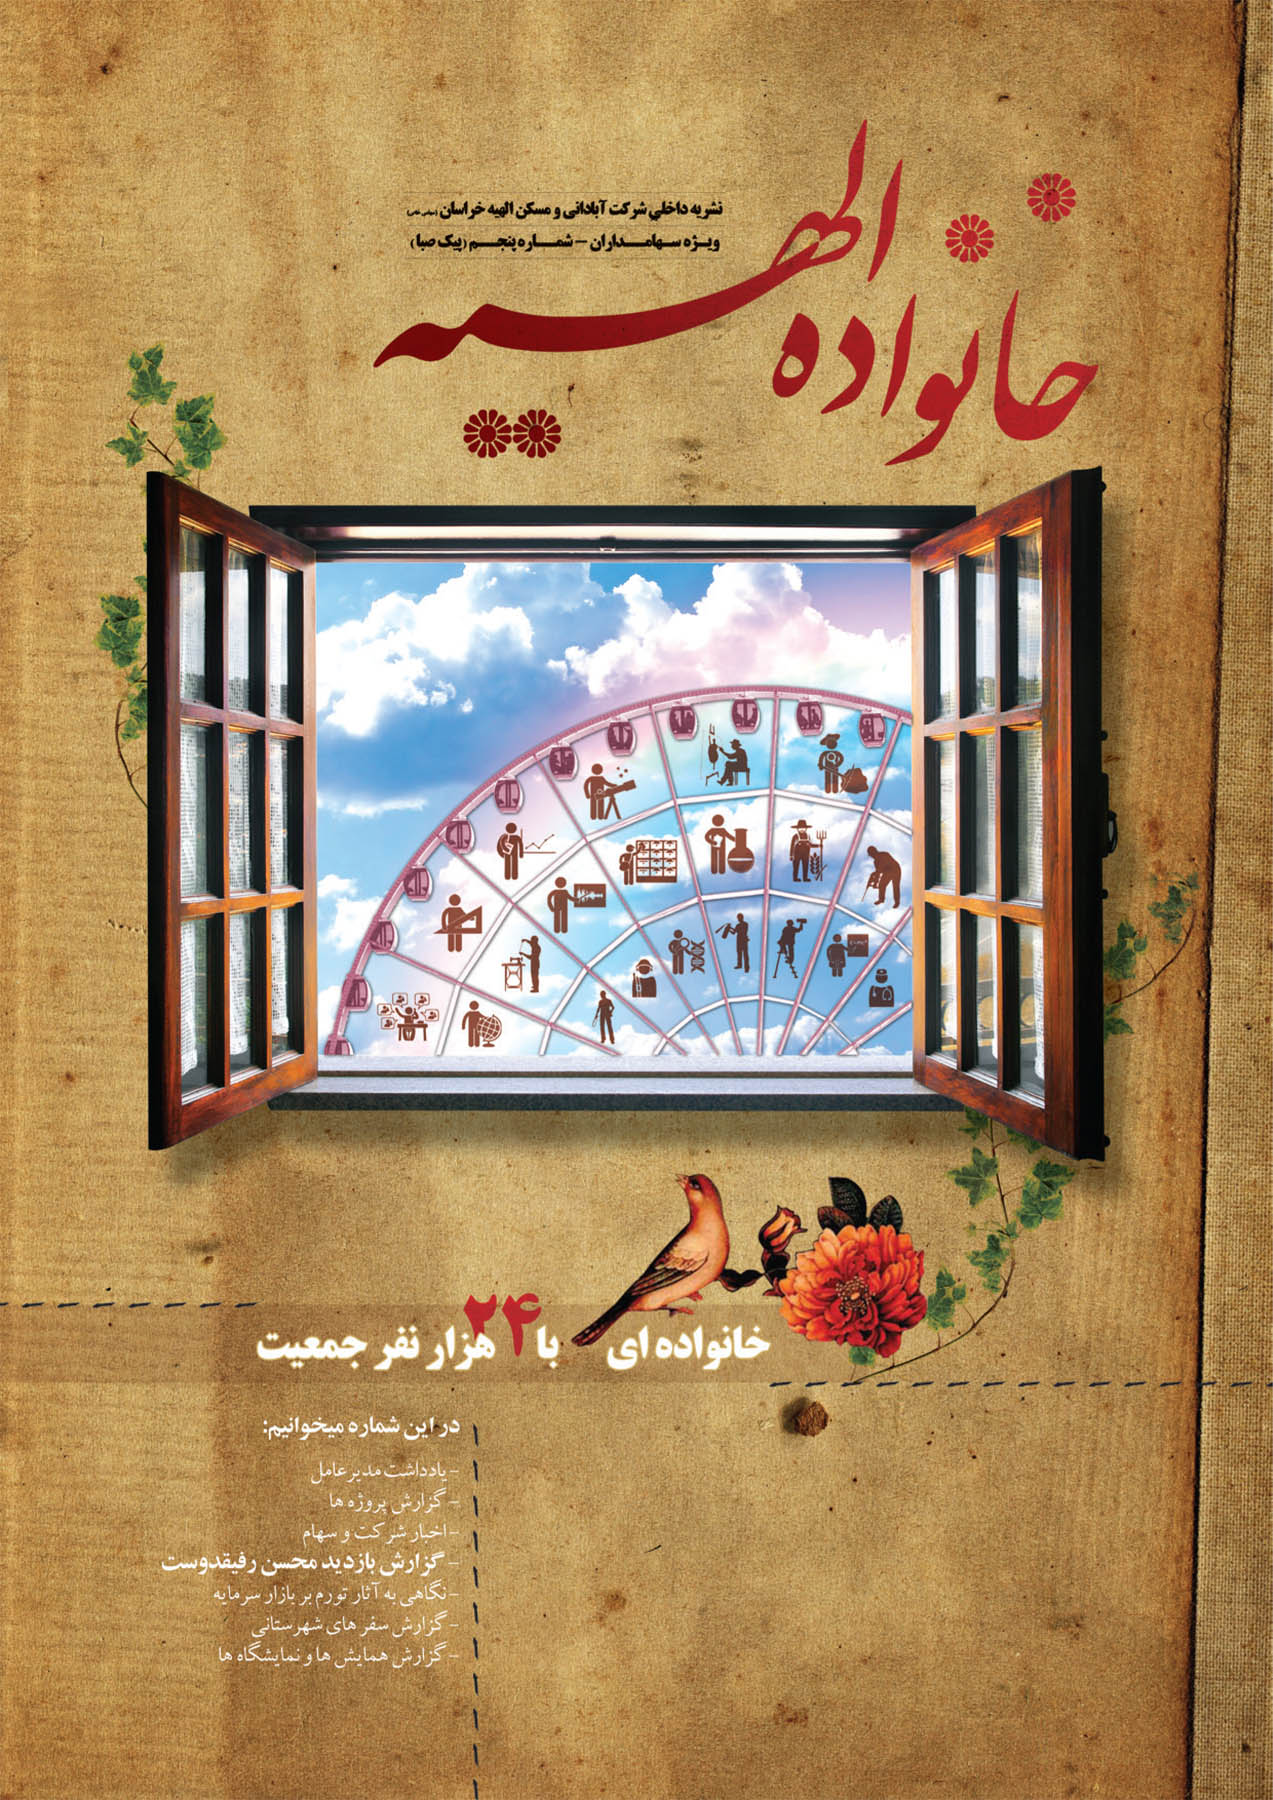 نسخه PDF پنجمین شماره نشریه داخلی شرکت به نام “نشریه خانواده الهیه” منتشر می گردد